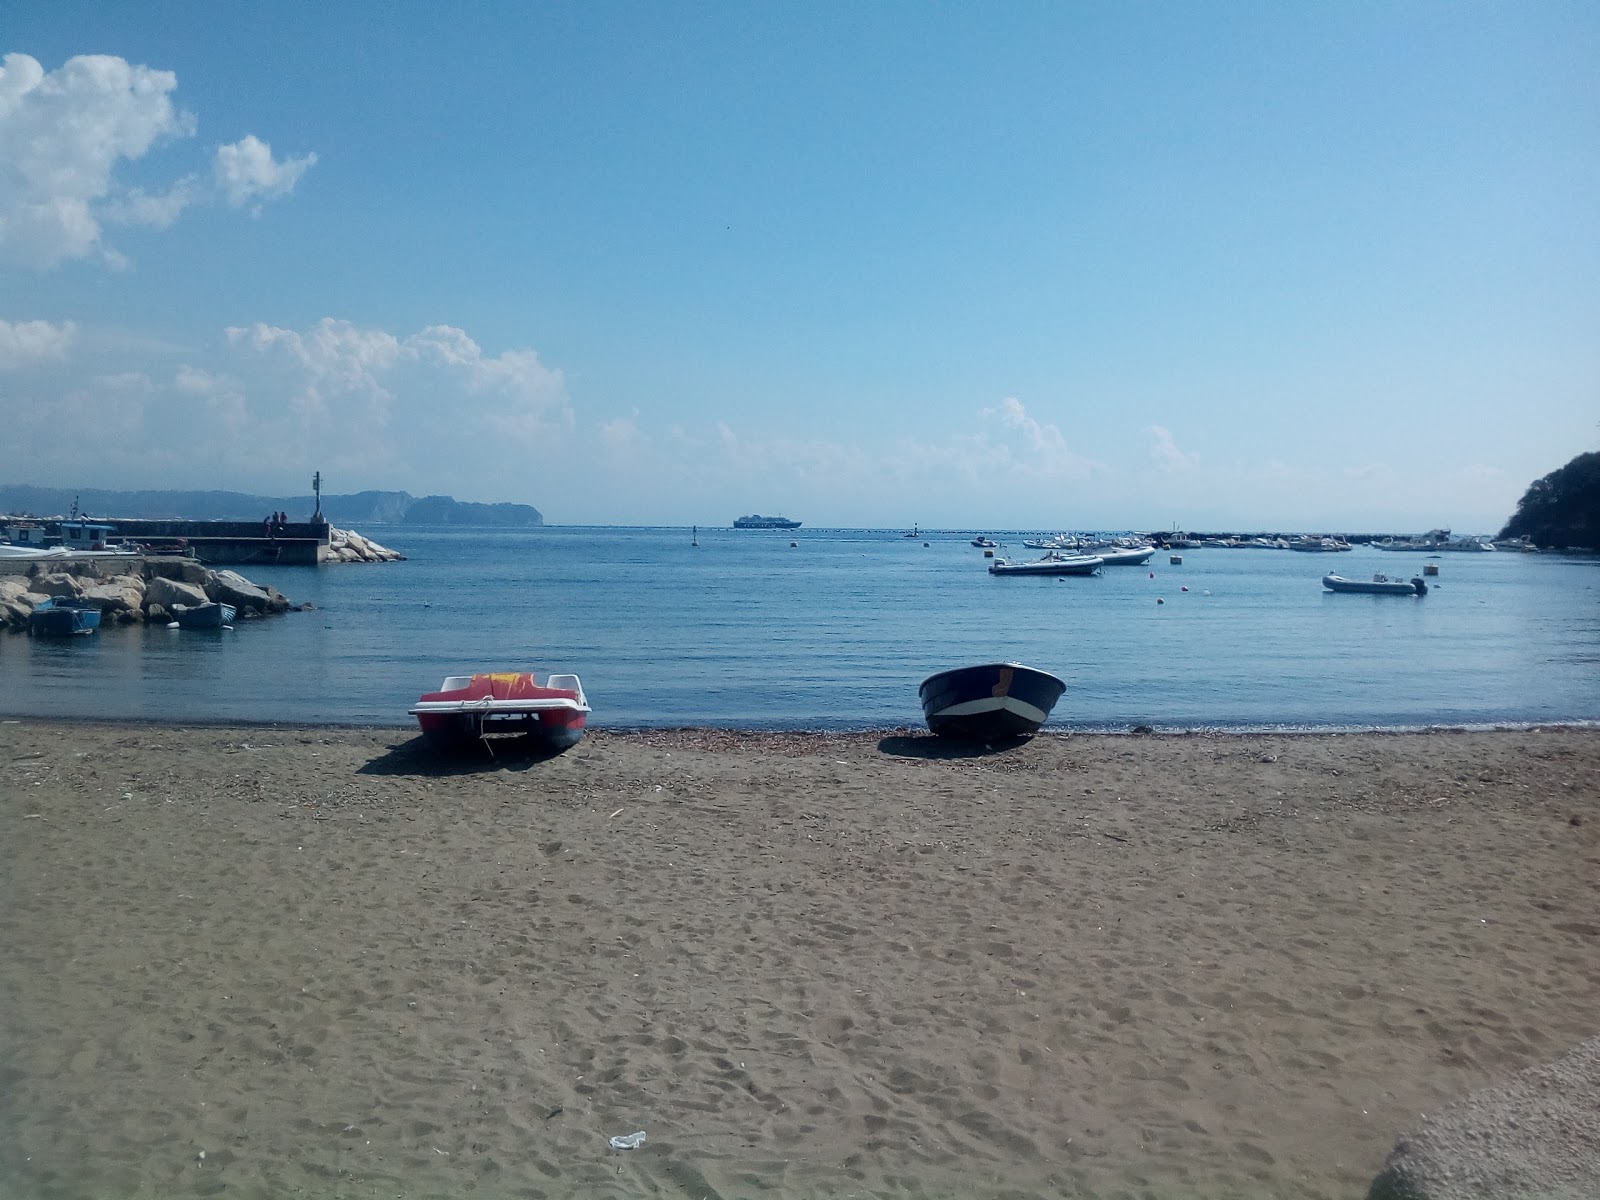 Foto von Marina grande beach mit viele kleine buchten